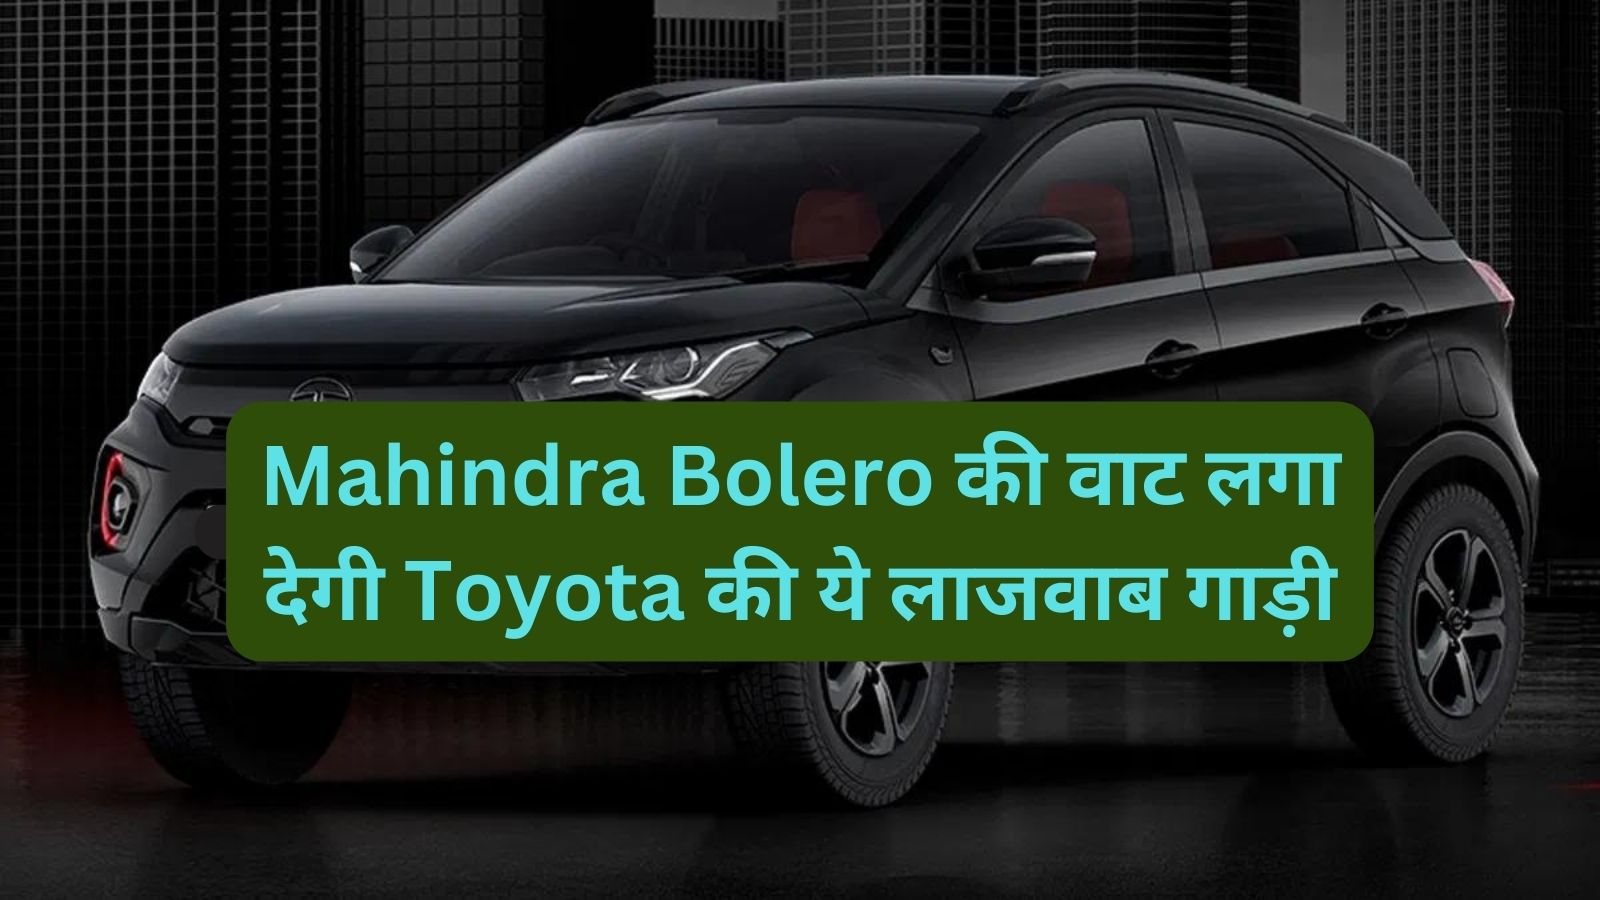 Toyota Rumion:Mahindra Bolero की वाट लगा देगी Toyota की ये लाजवाब गाड़ी,जानिए इसकें शानदार माइलेज और कीमत के बारे मे